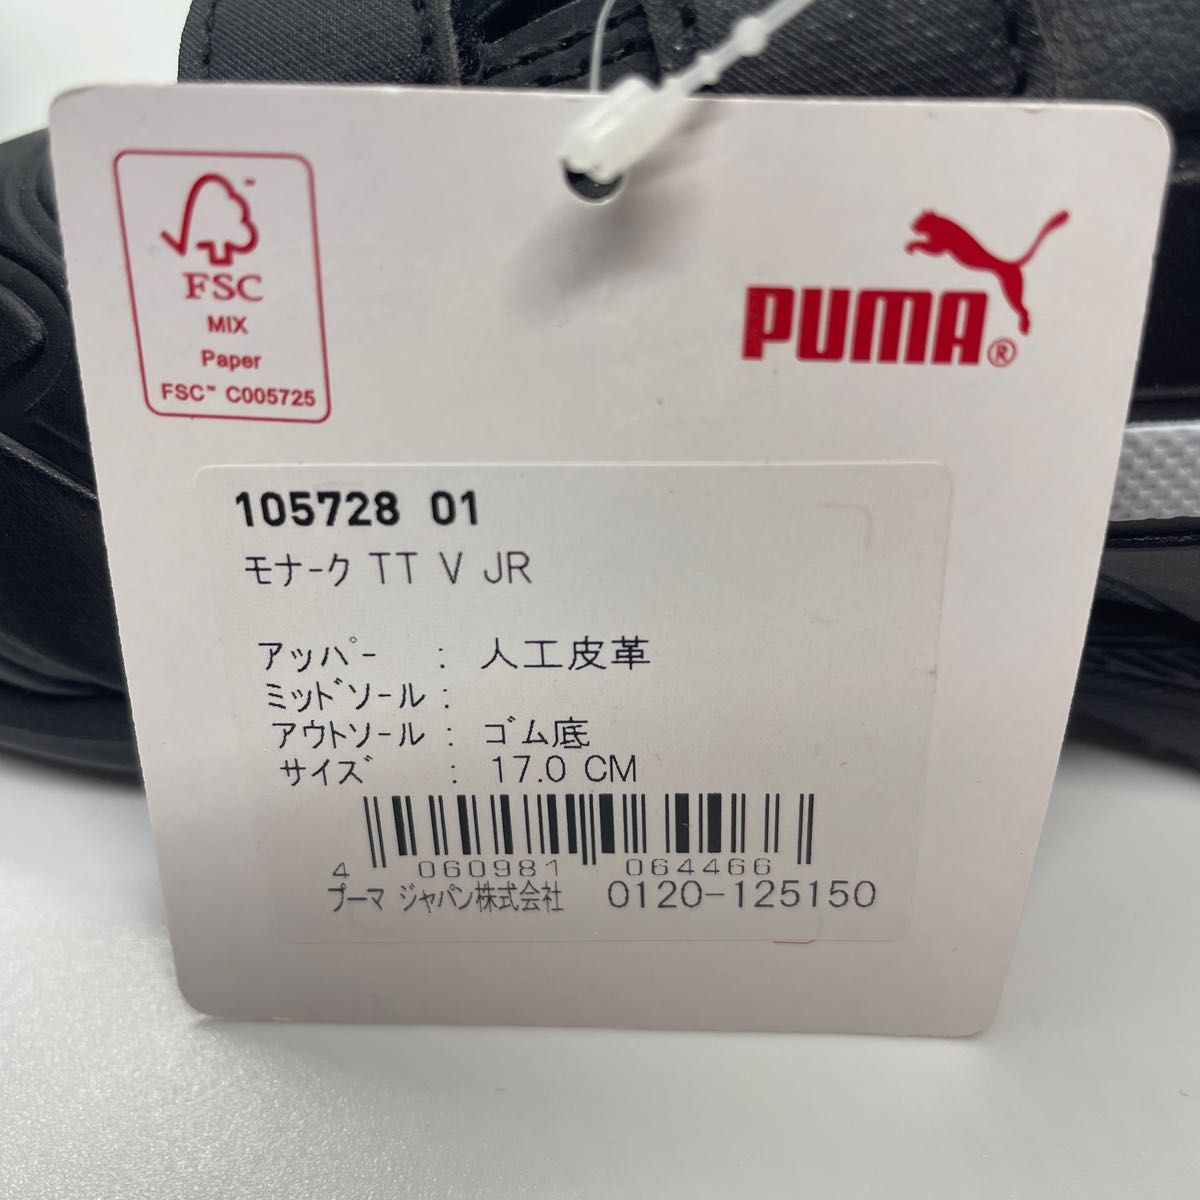 プーマ PUMA ジュニア サッカー トレーニングシューズ モナーク TT V JR 105728